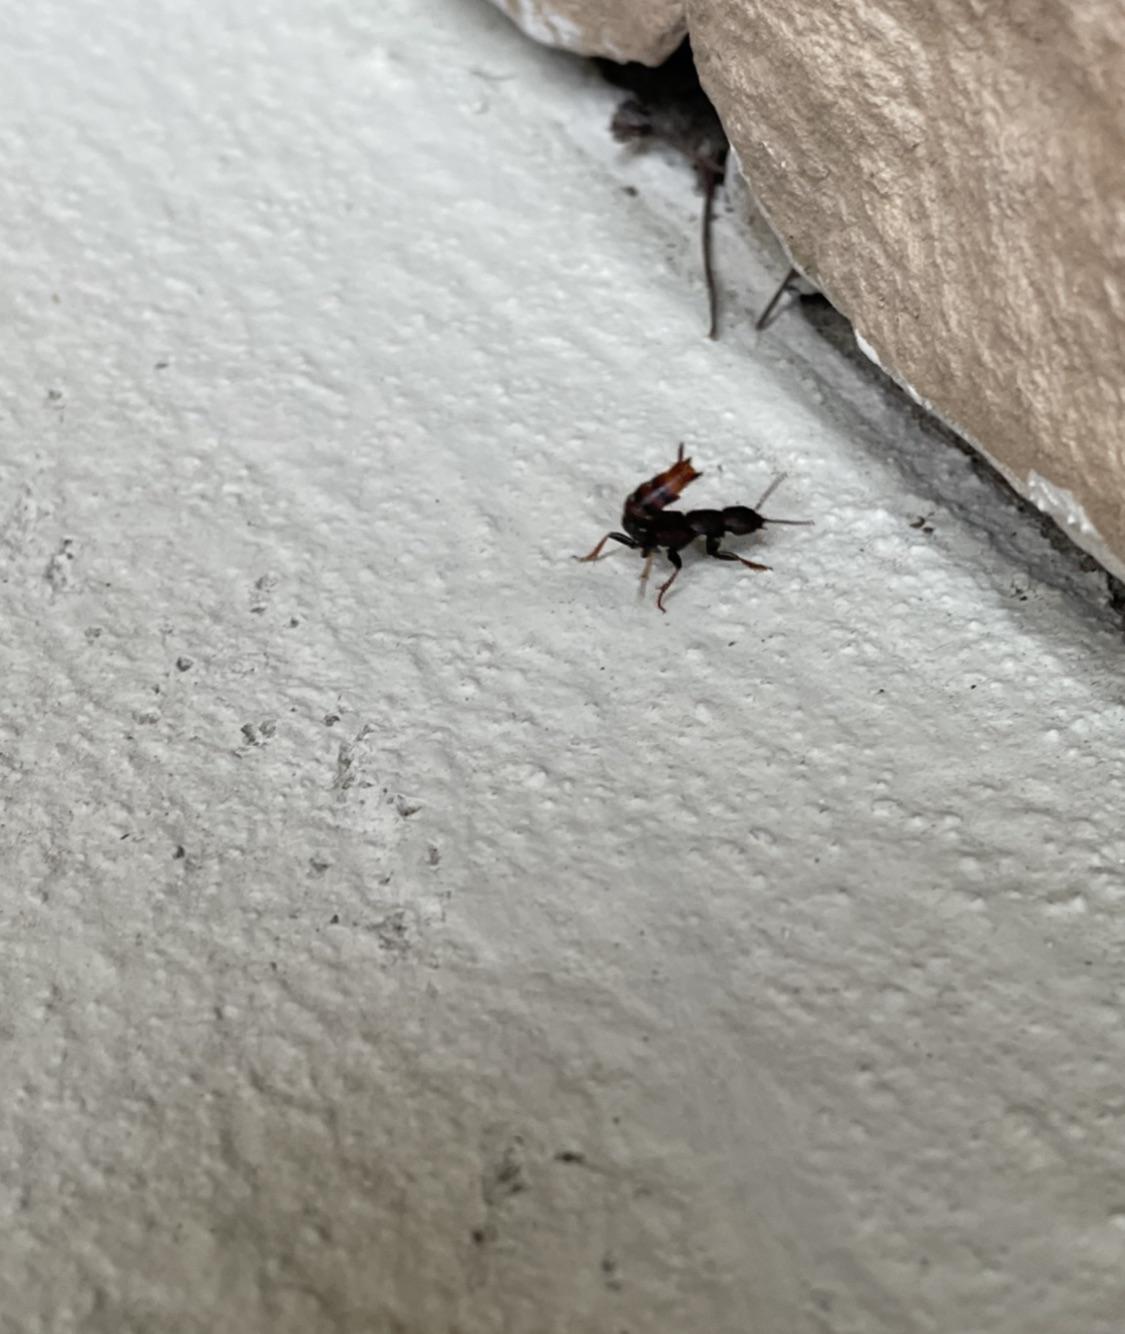 Ant Looks Like Scorpion